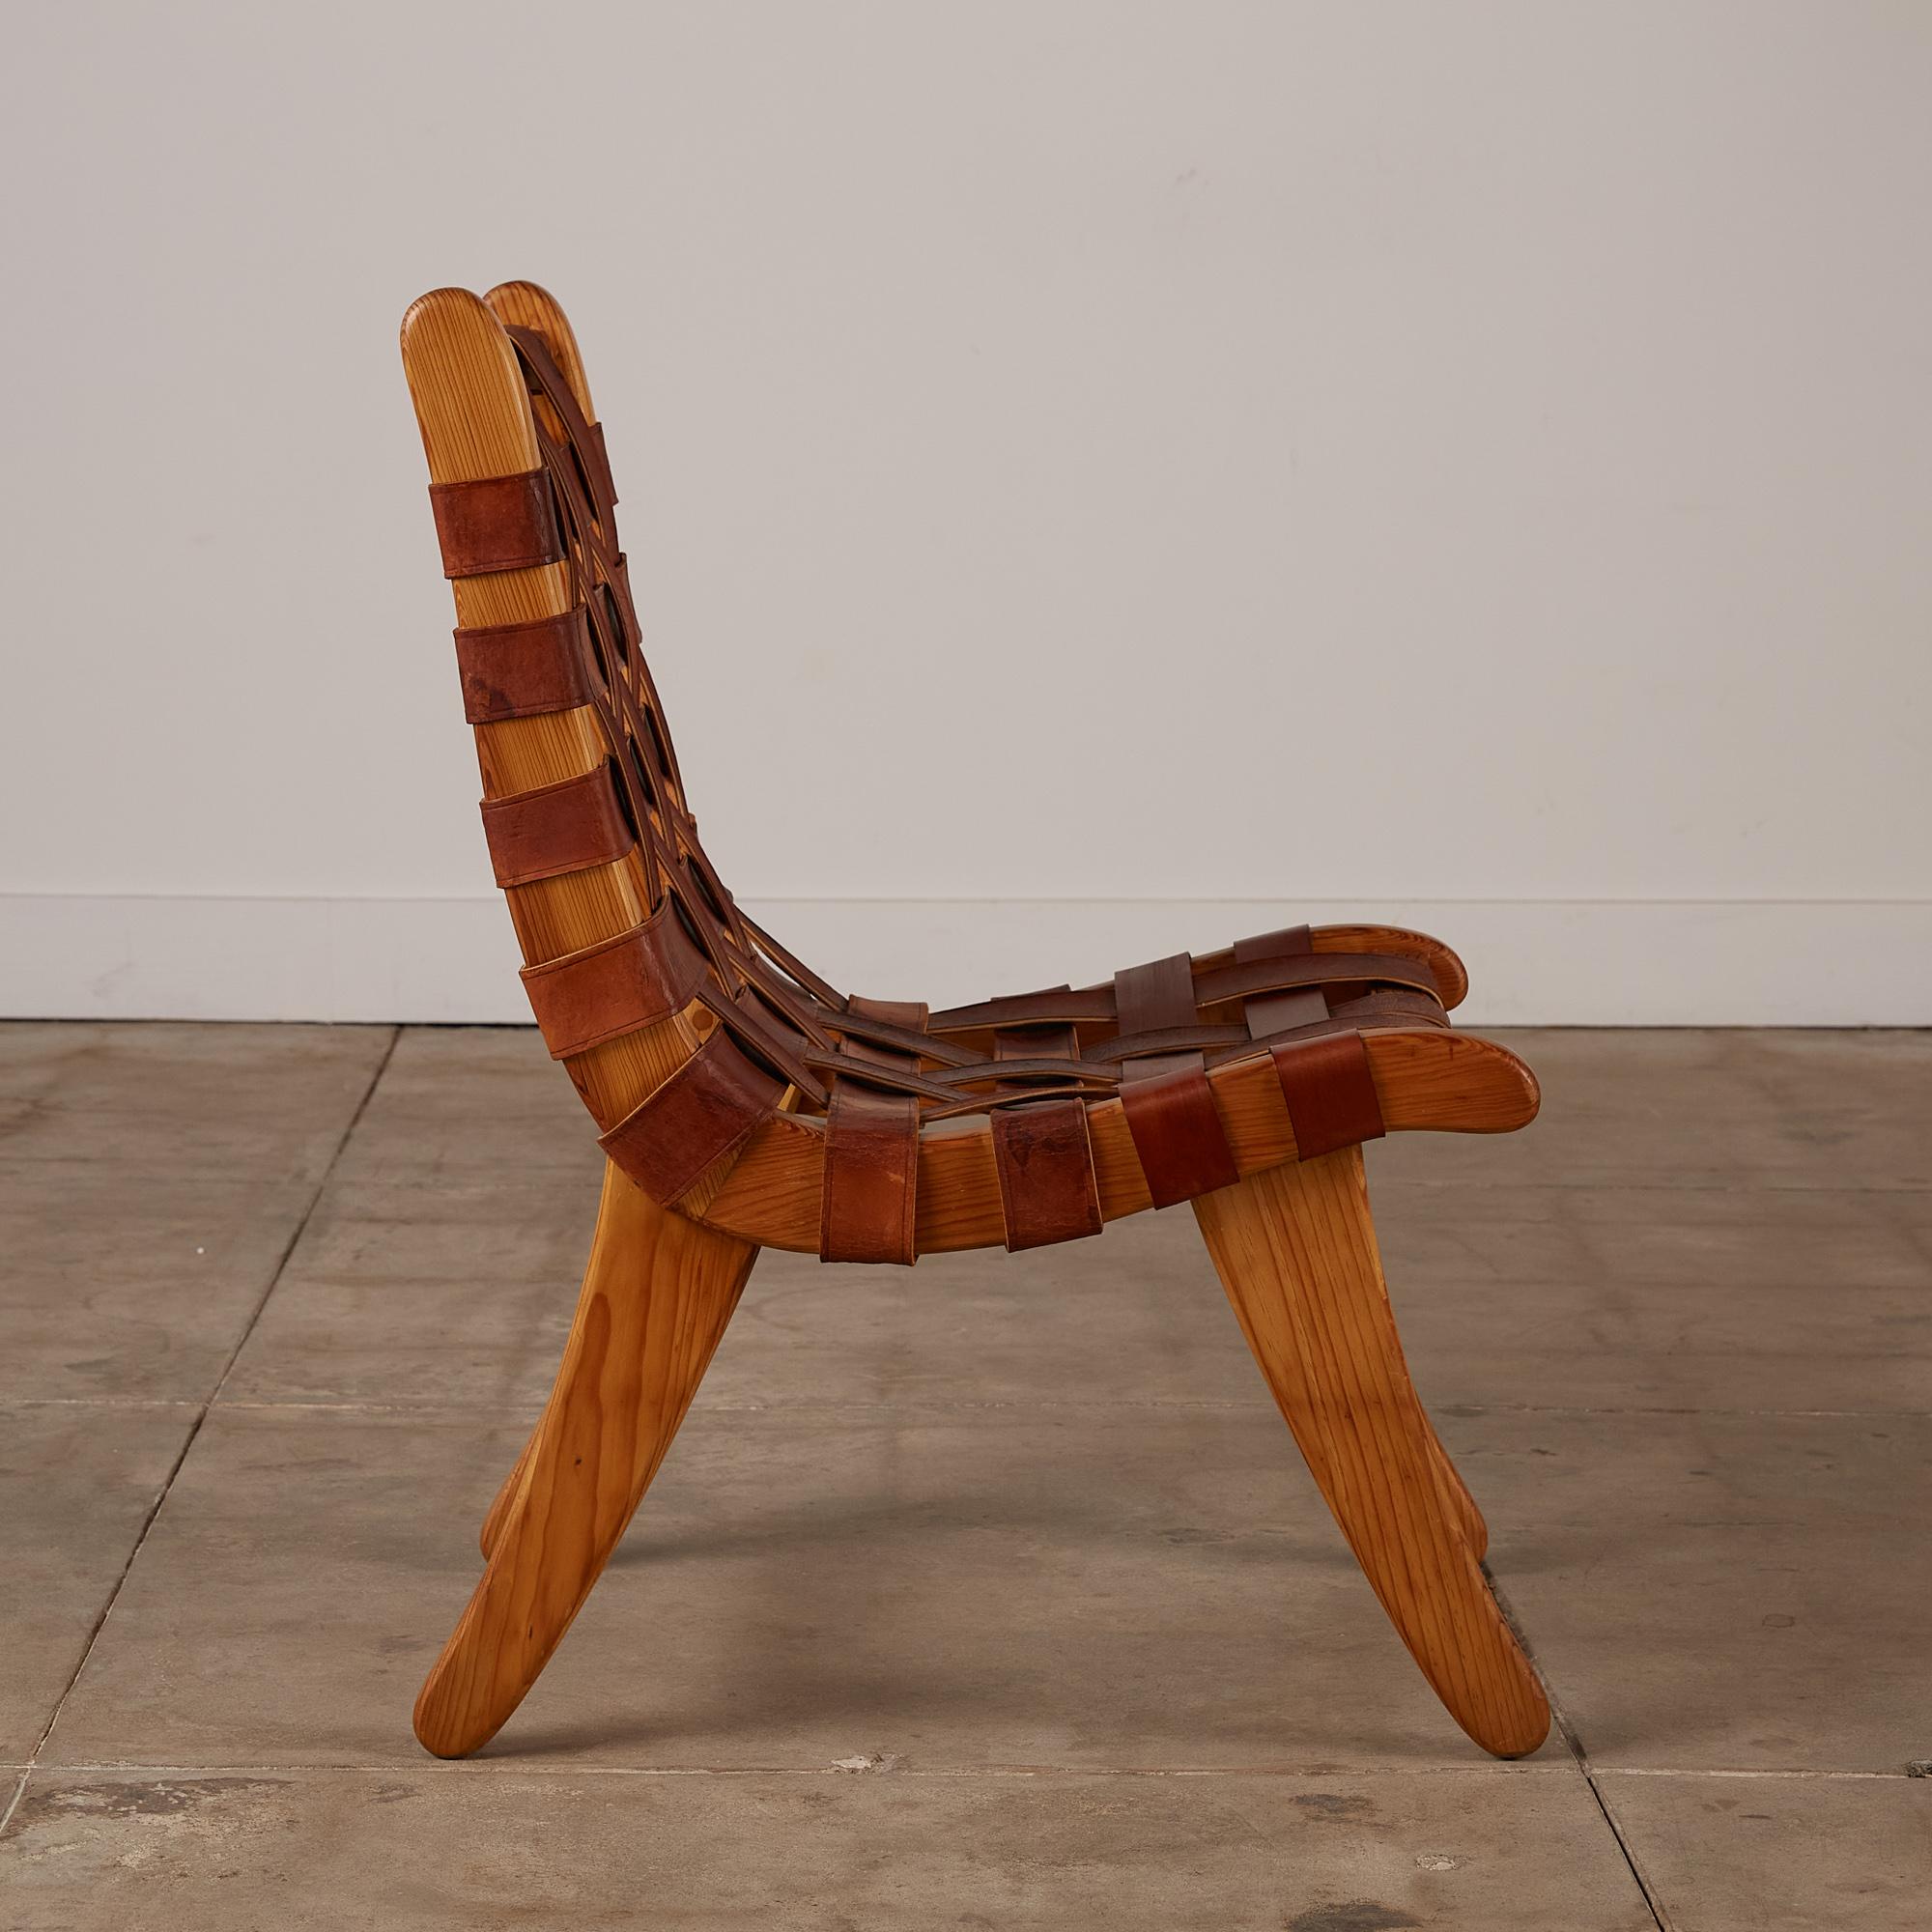 Mexican “San Miguelito” Chair by Michael van Beuren